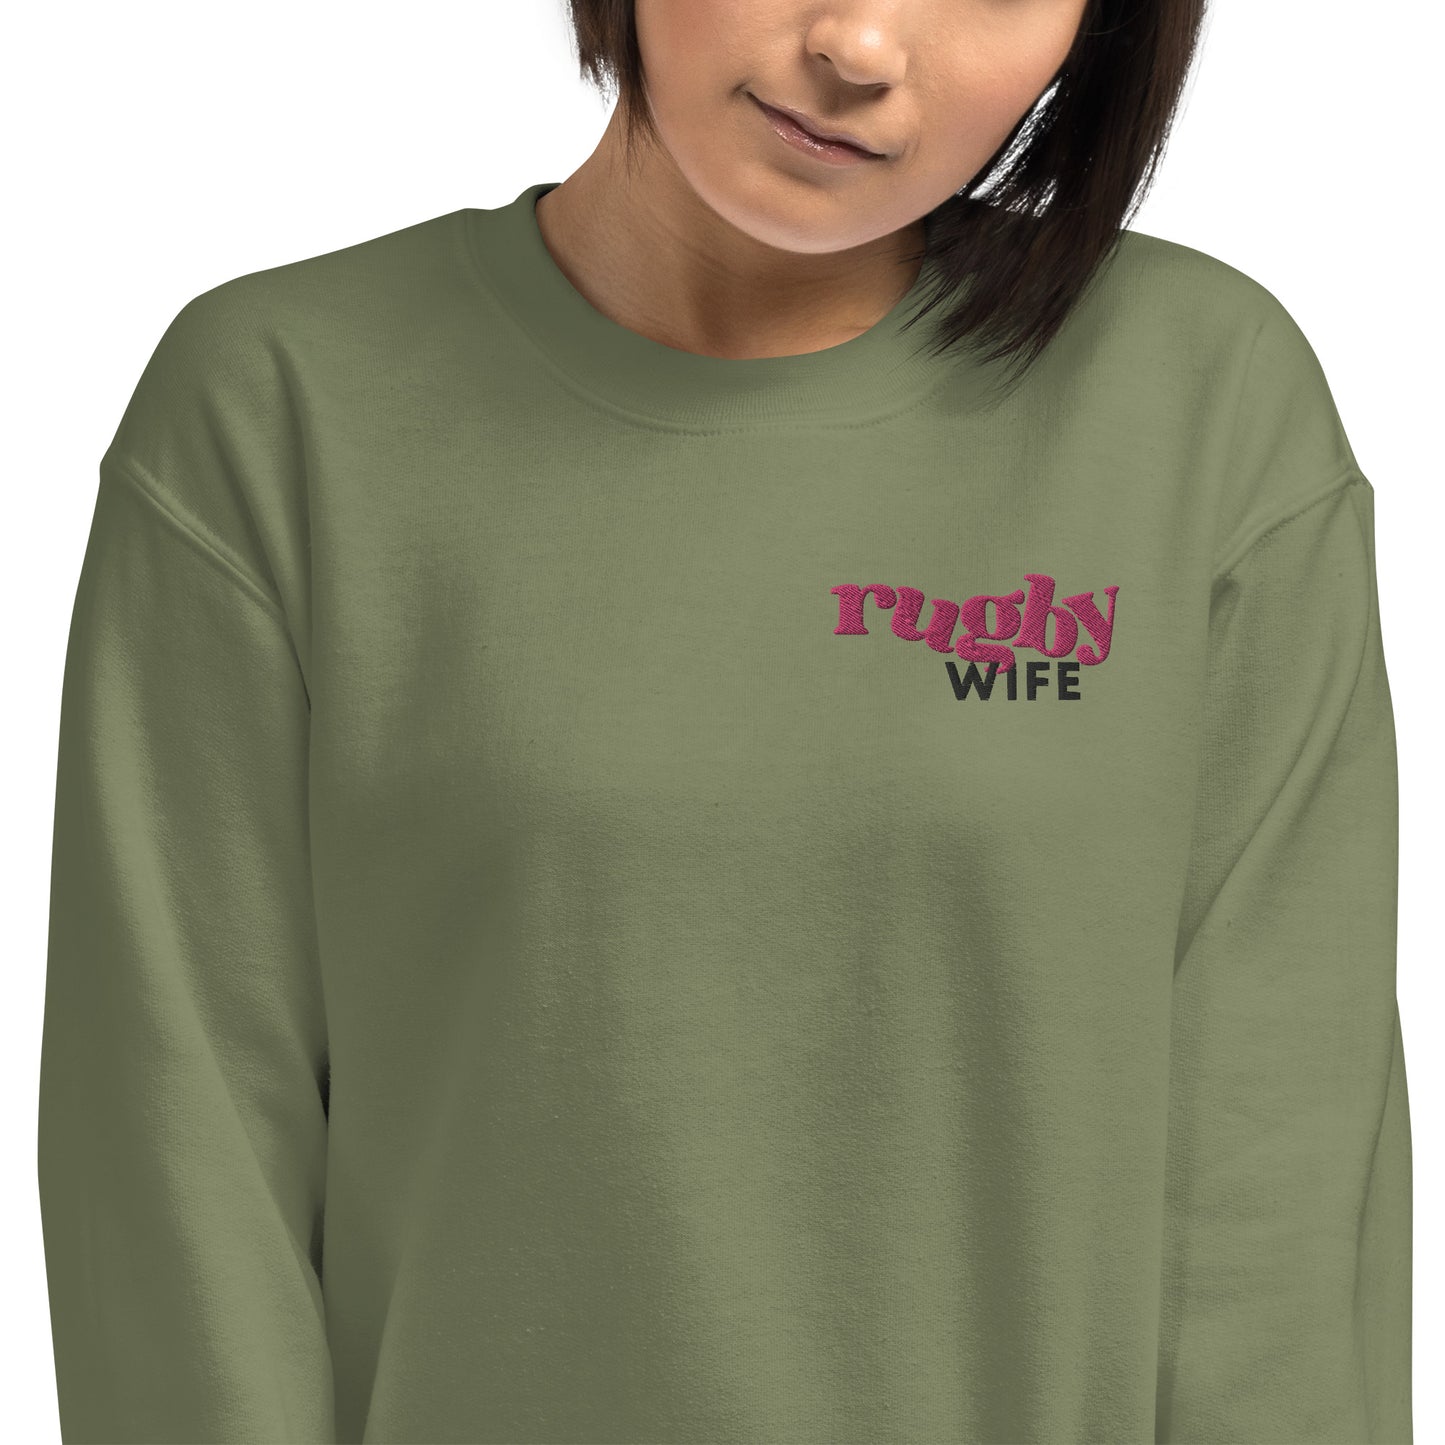 Rugby Wife Unisex Sweatshirt